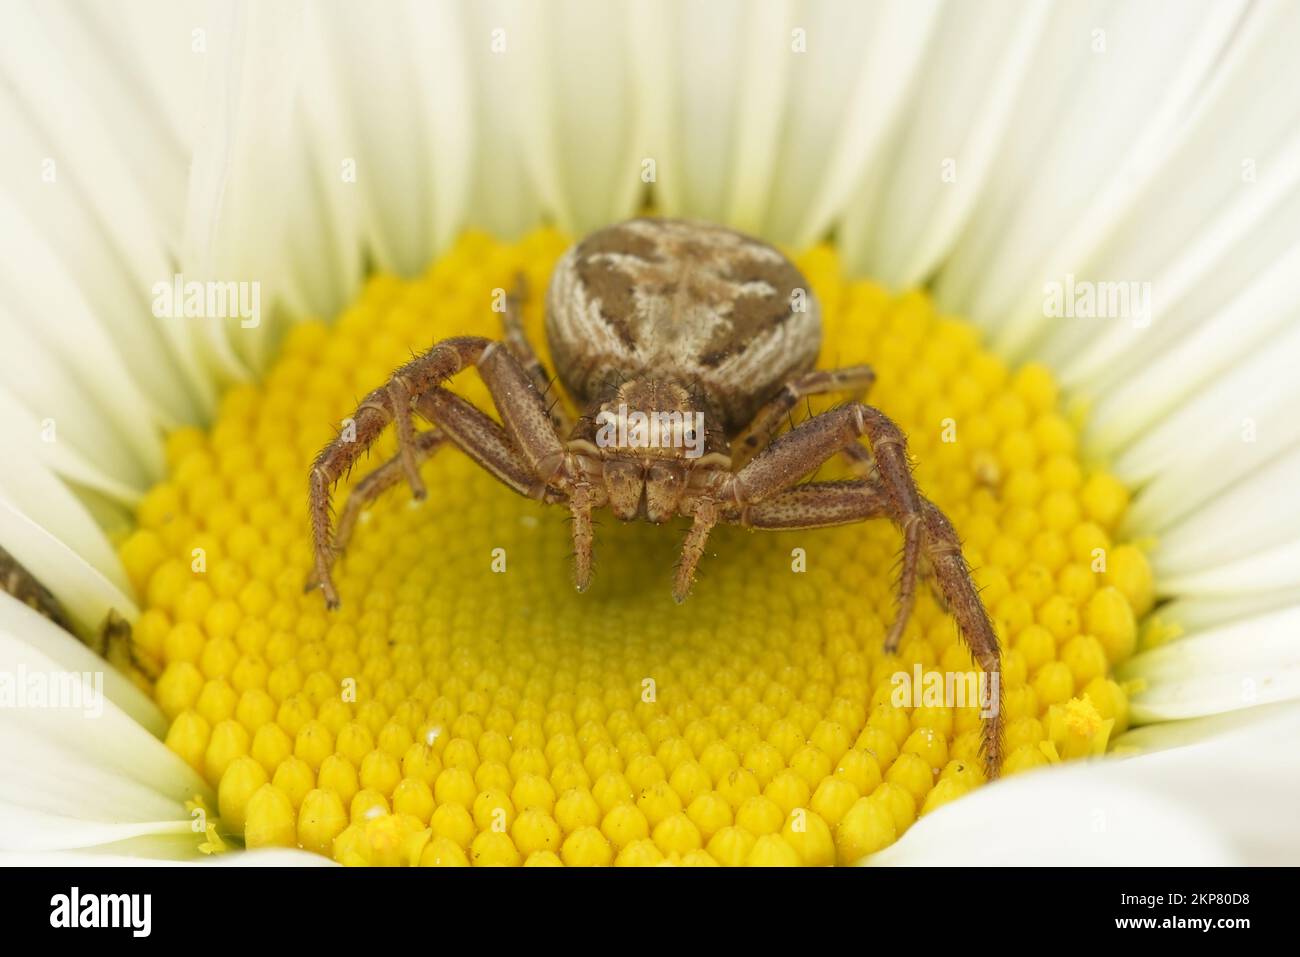 Natürliche Nahaufnahme auf einer kleinen, wild aussehenden Krabbenspinne, Xysticus auf einer gelb-weißen Blume im Garten Stockfoto